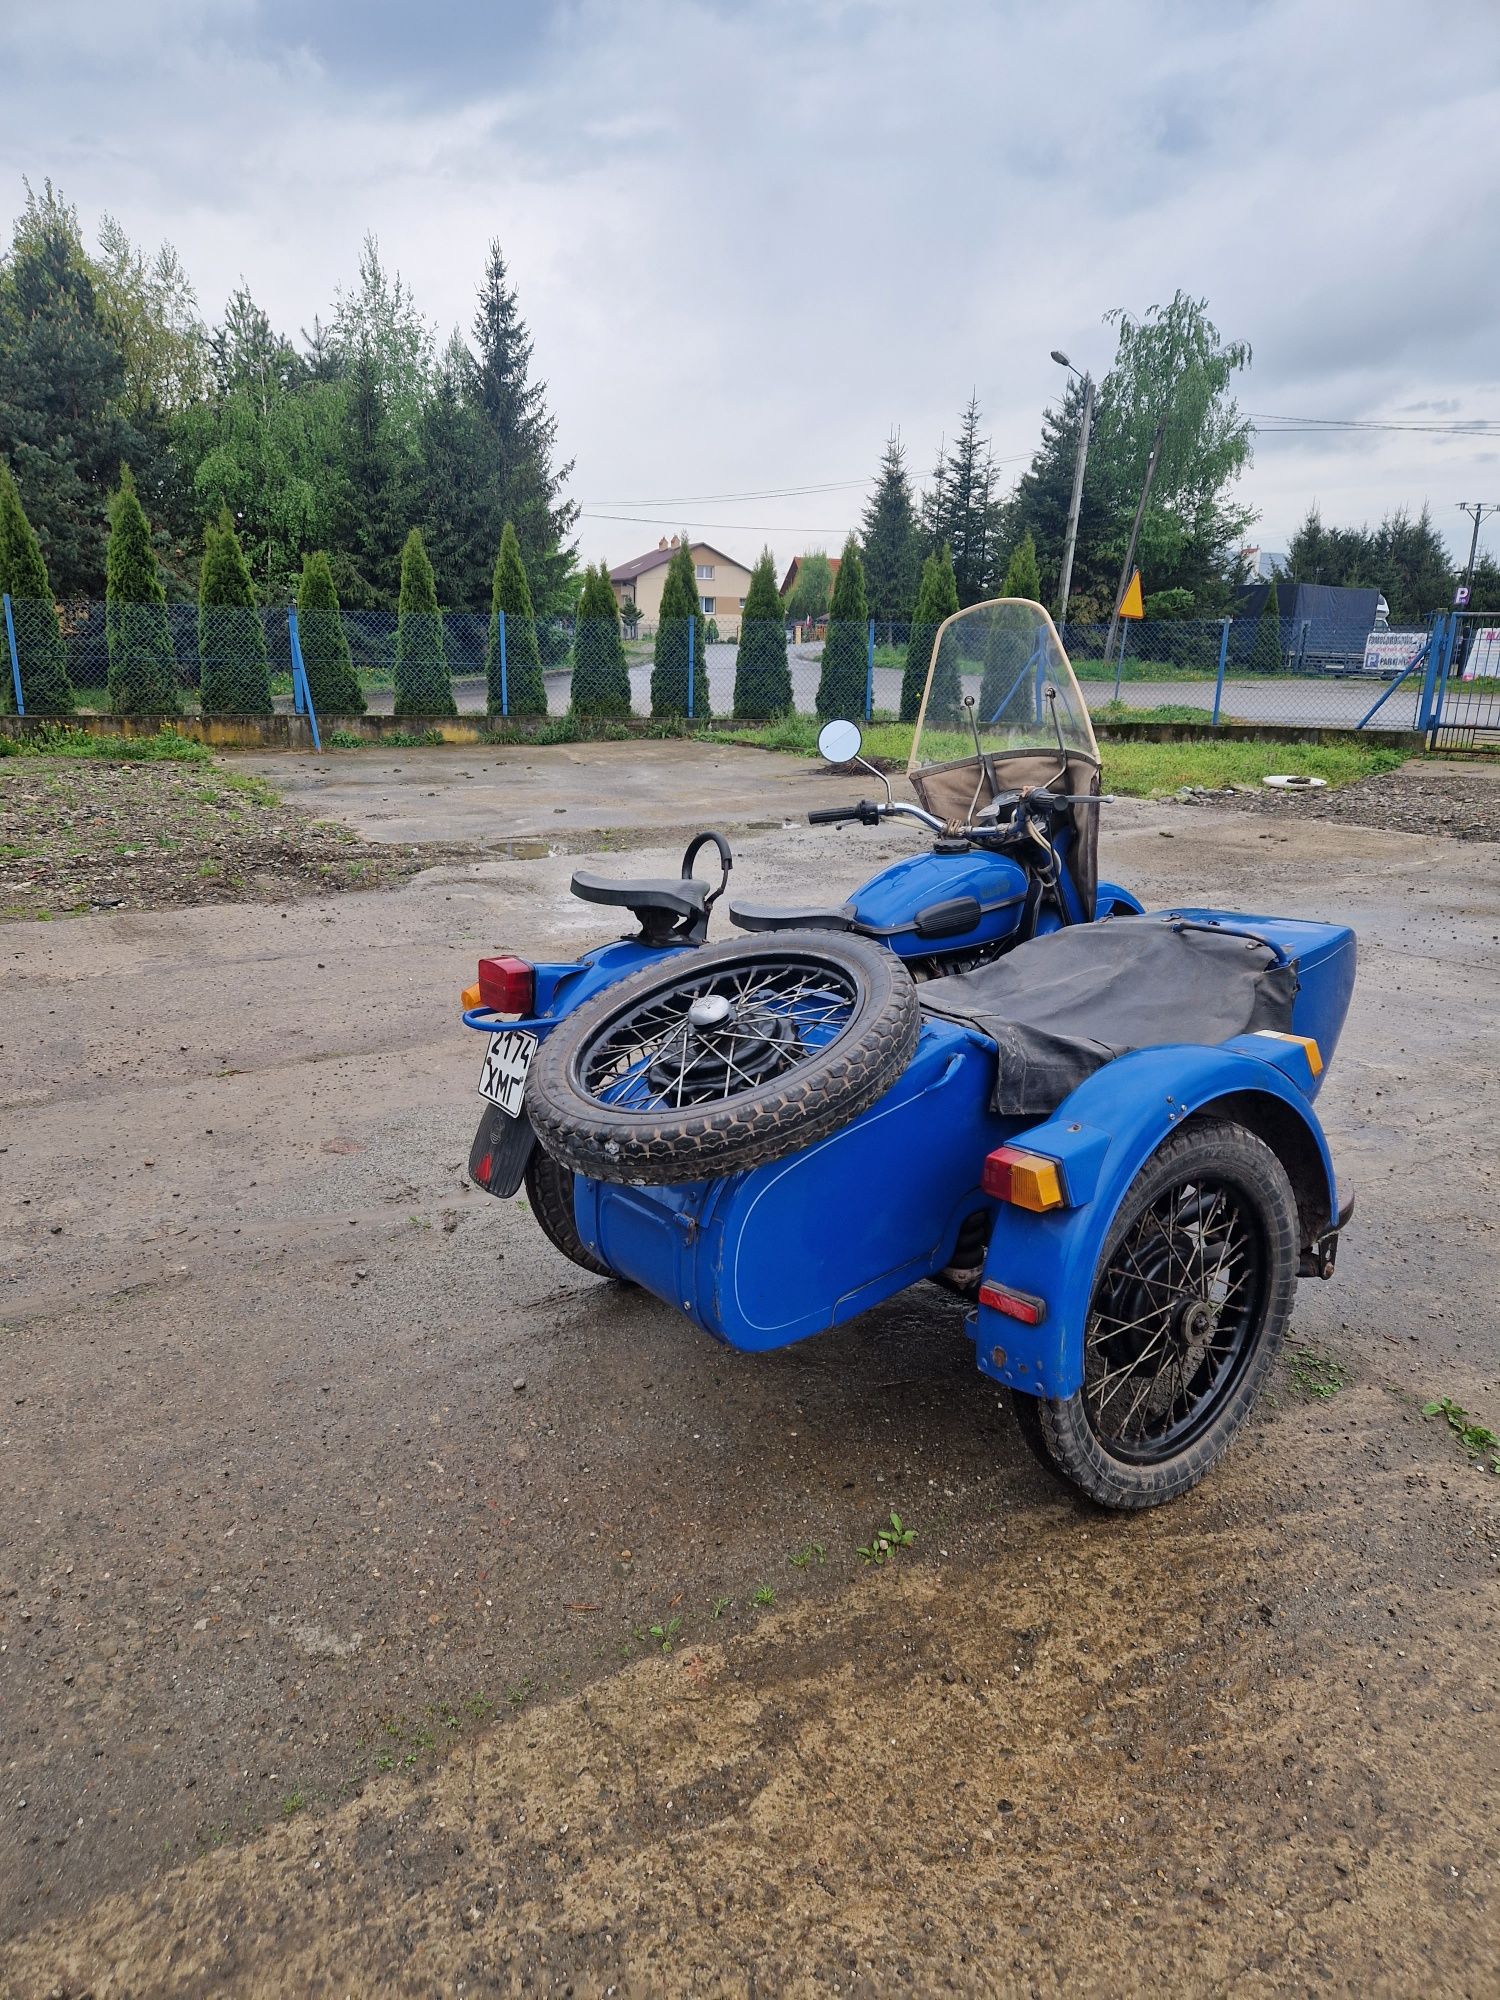 Motocykl Ural IM-38 z wstecznym biegem .